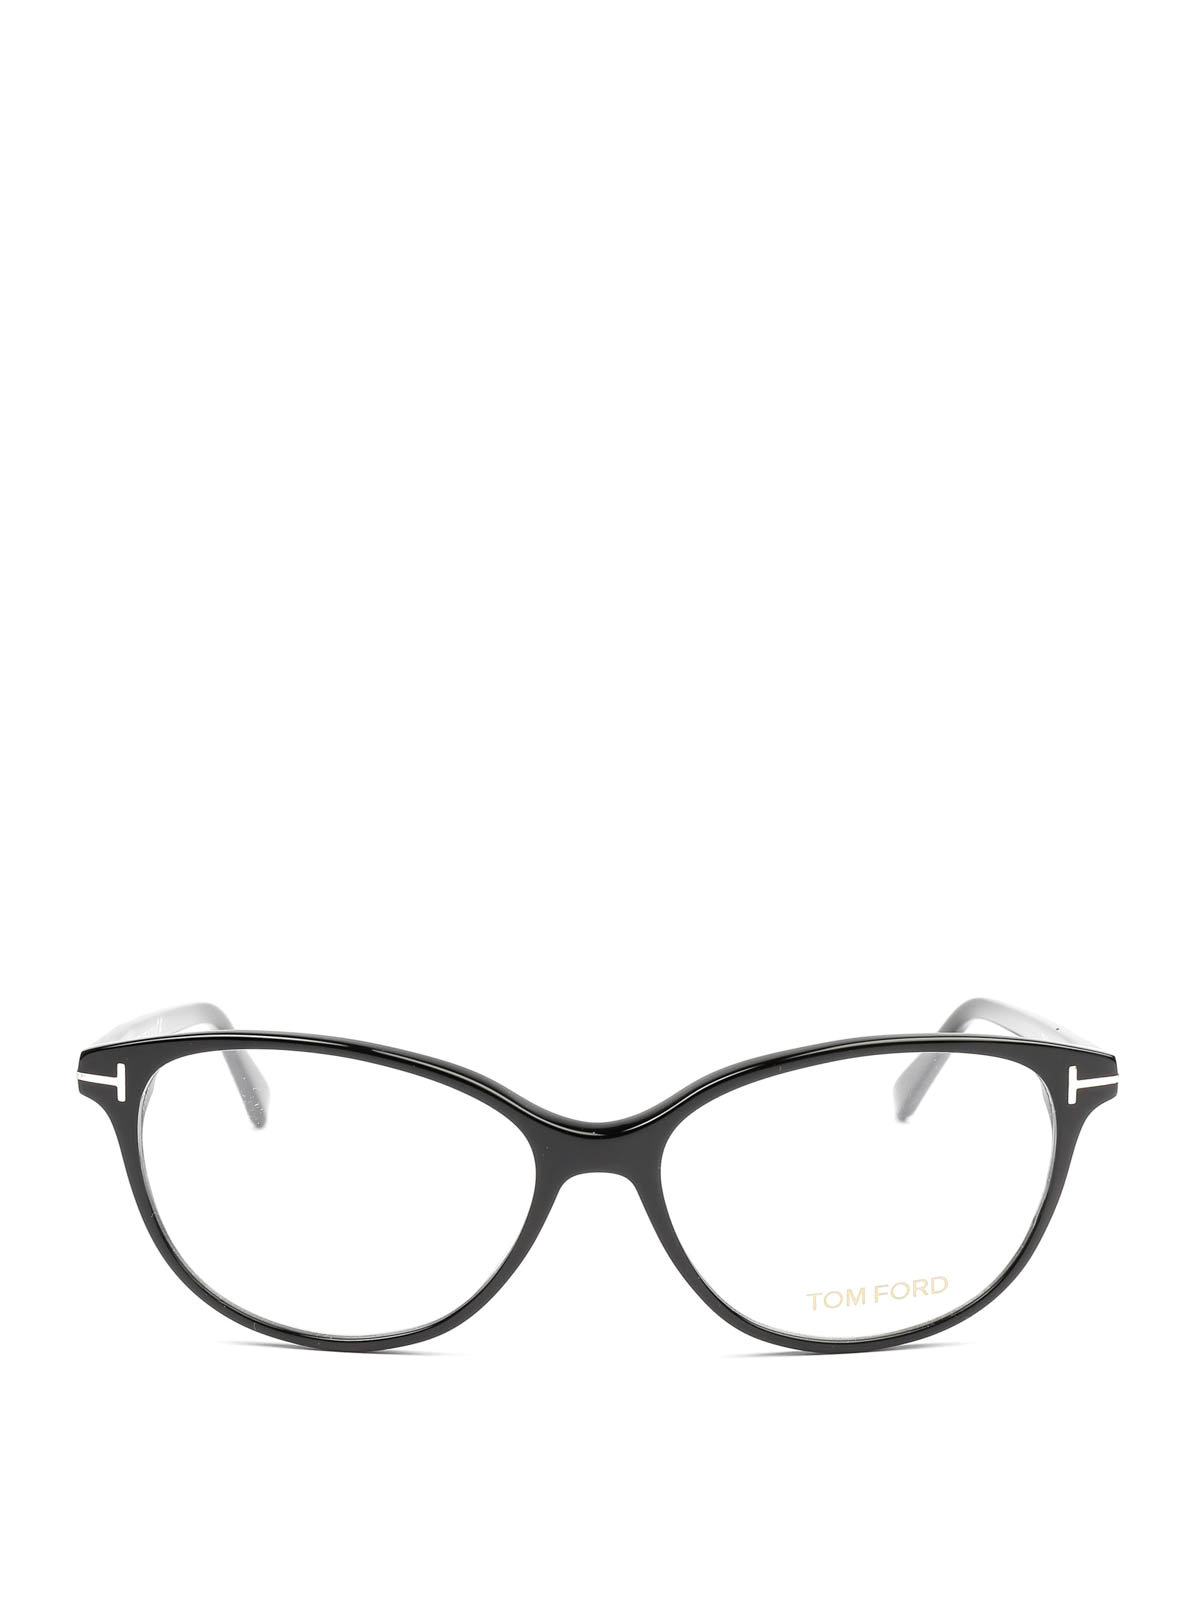 cat eye prescription glasses online